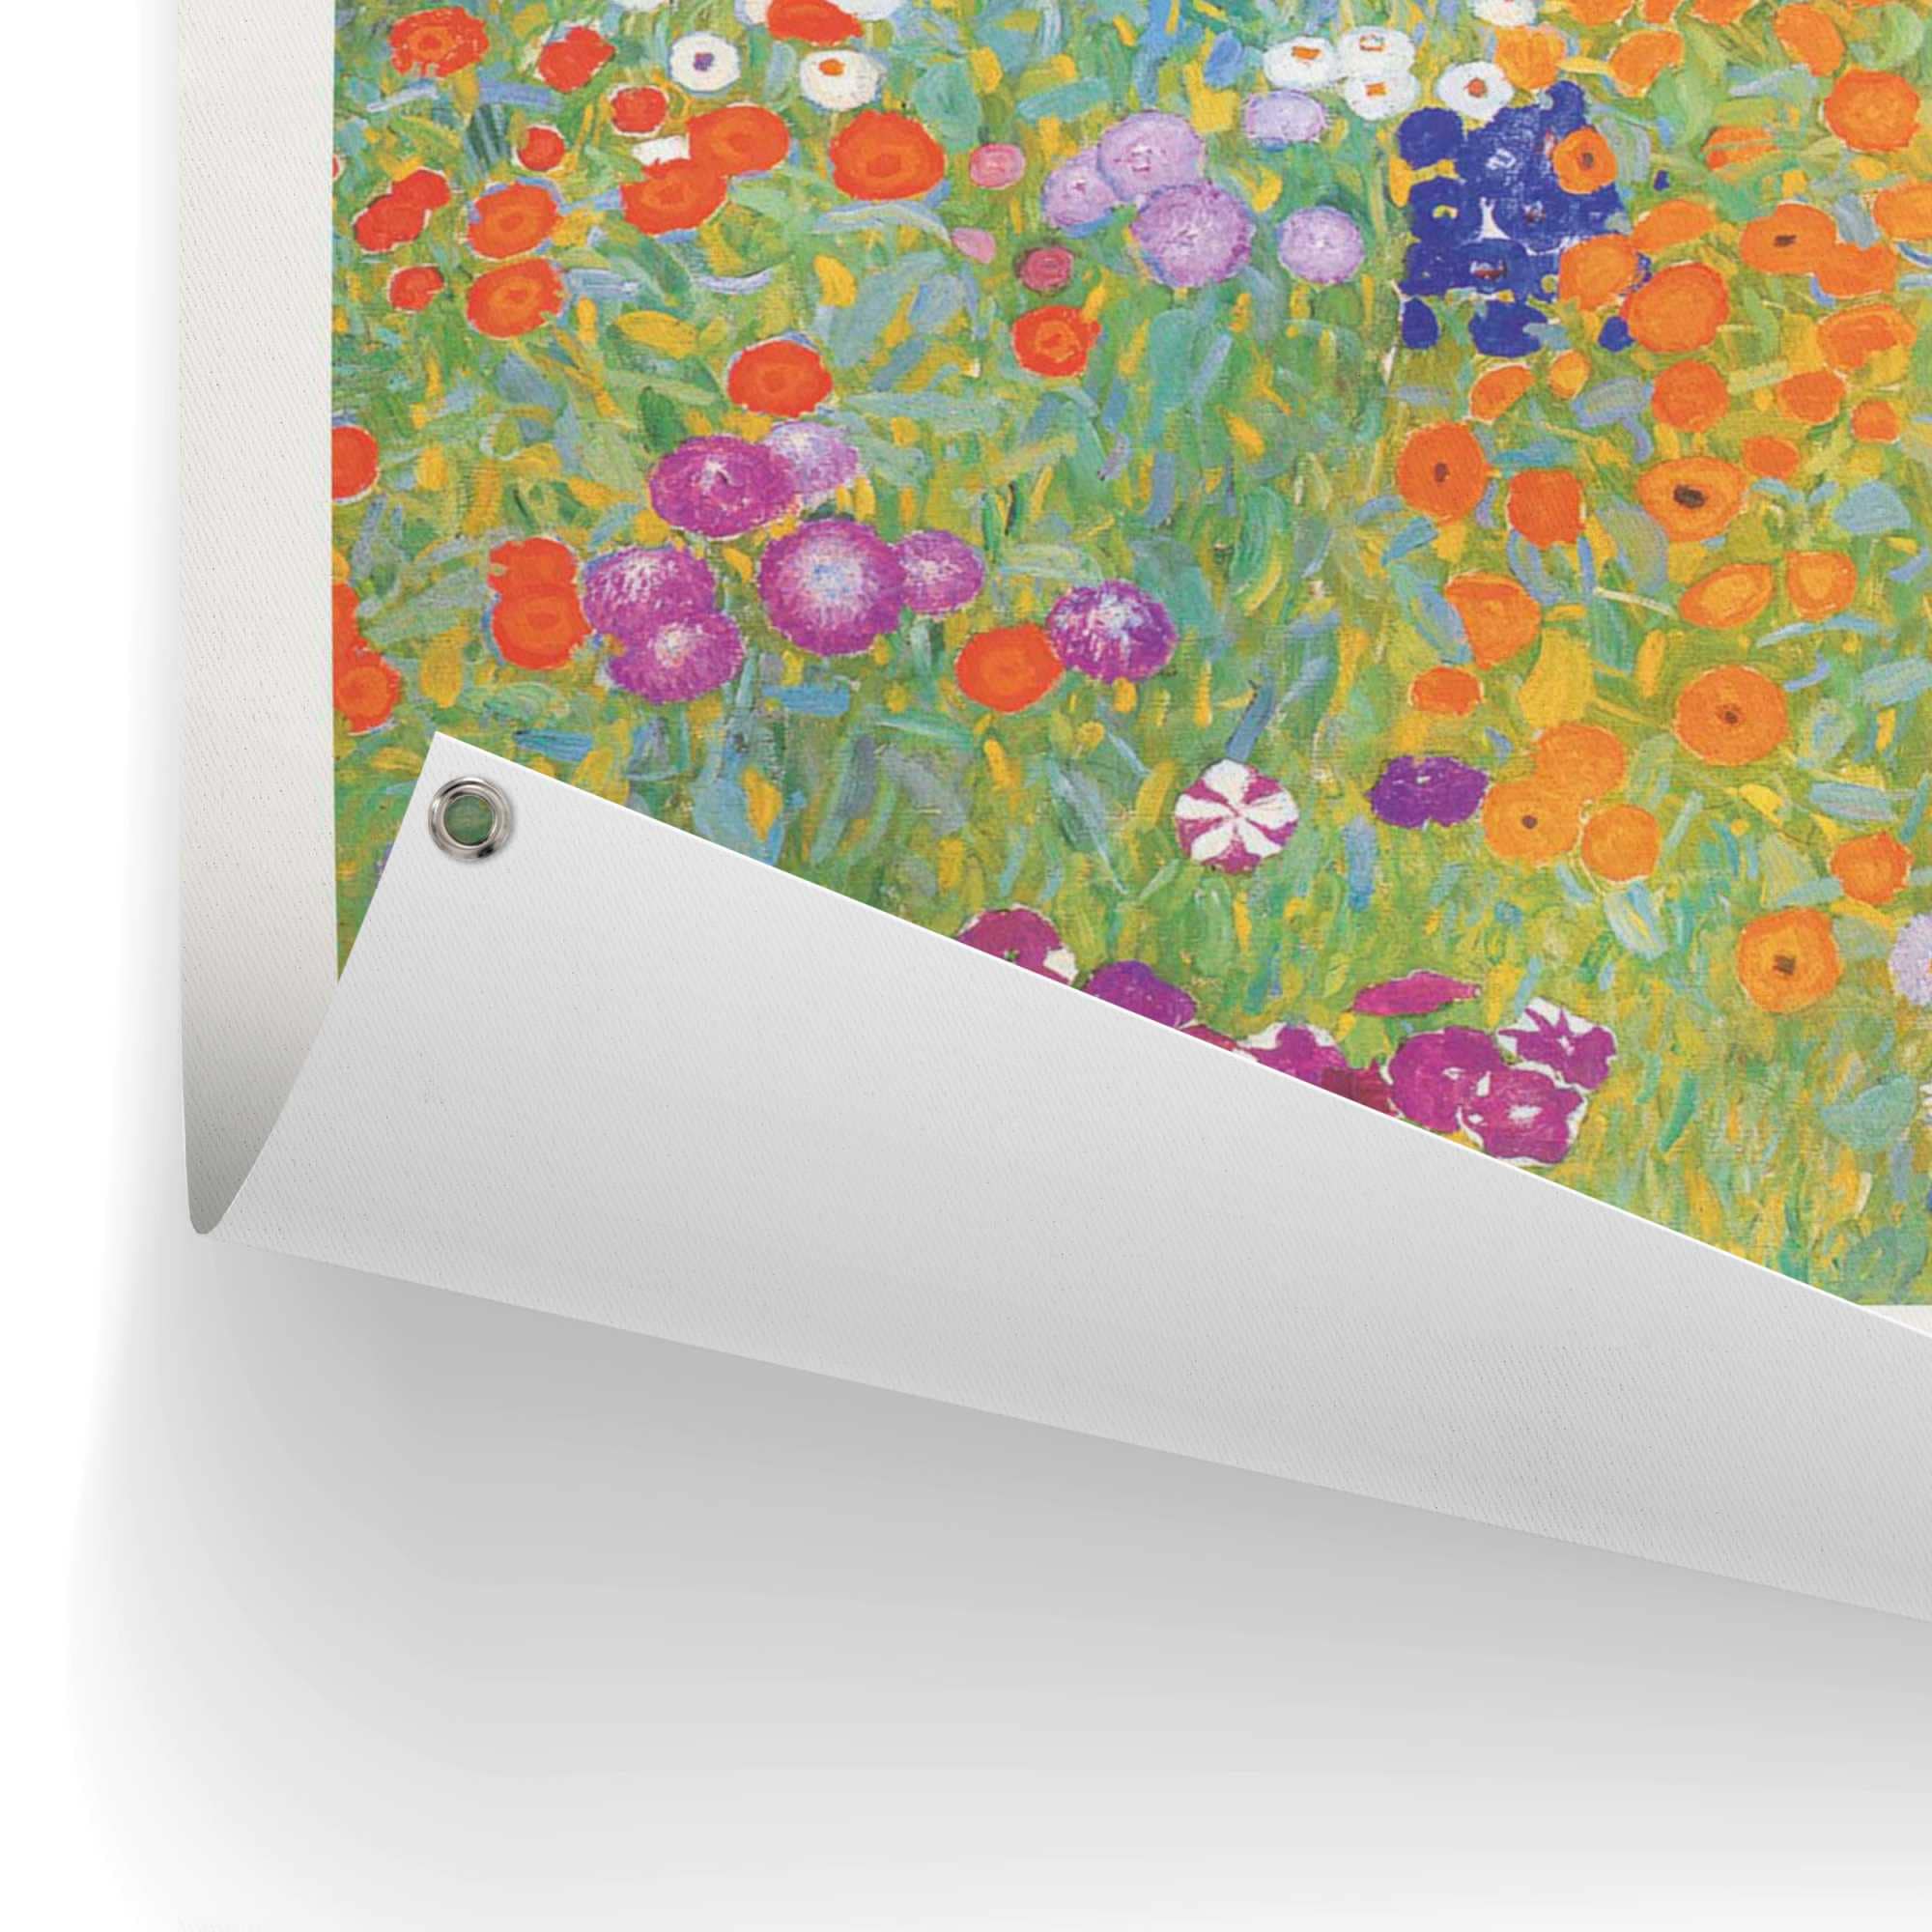 Reinders! Poster »Gustav Klimt - Bauerngarten«, Outdoor für Garten oder Balkon